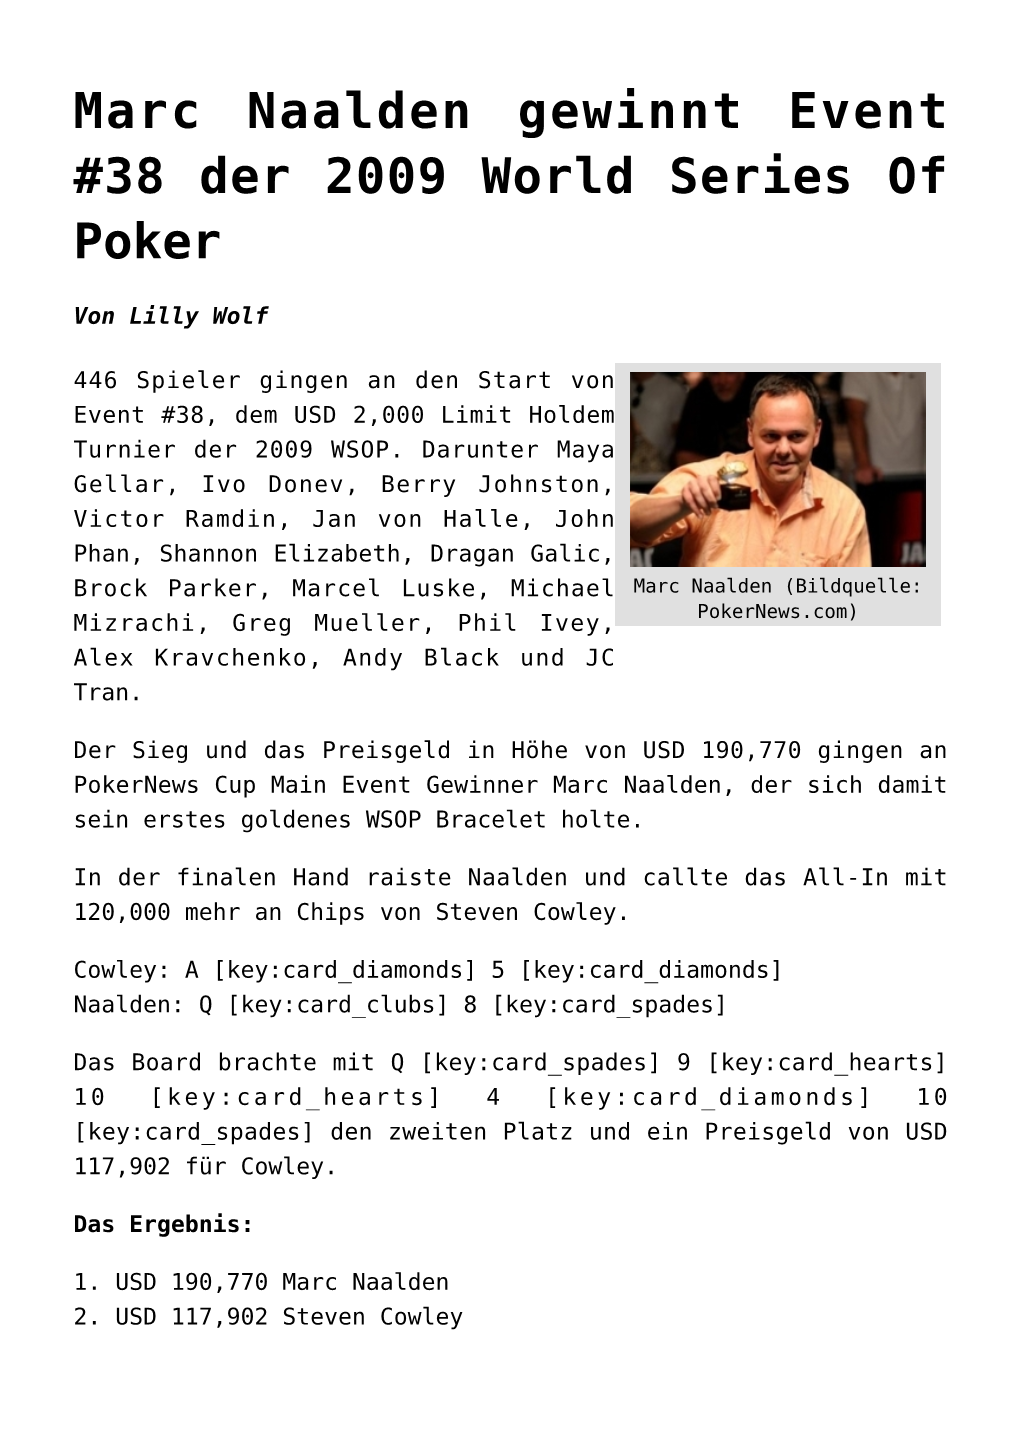 Marc Naalden Gewinnt Event #38 Der 2009 World Series of Poker